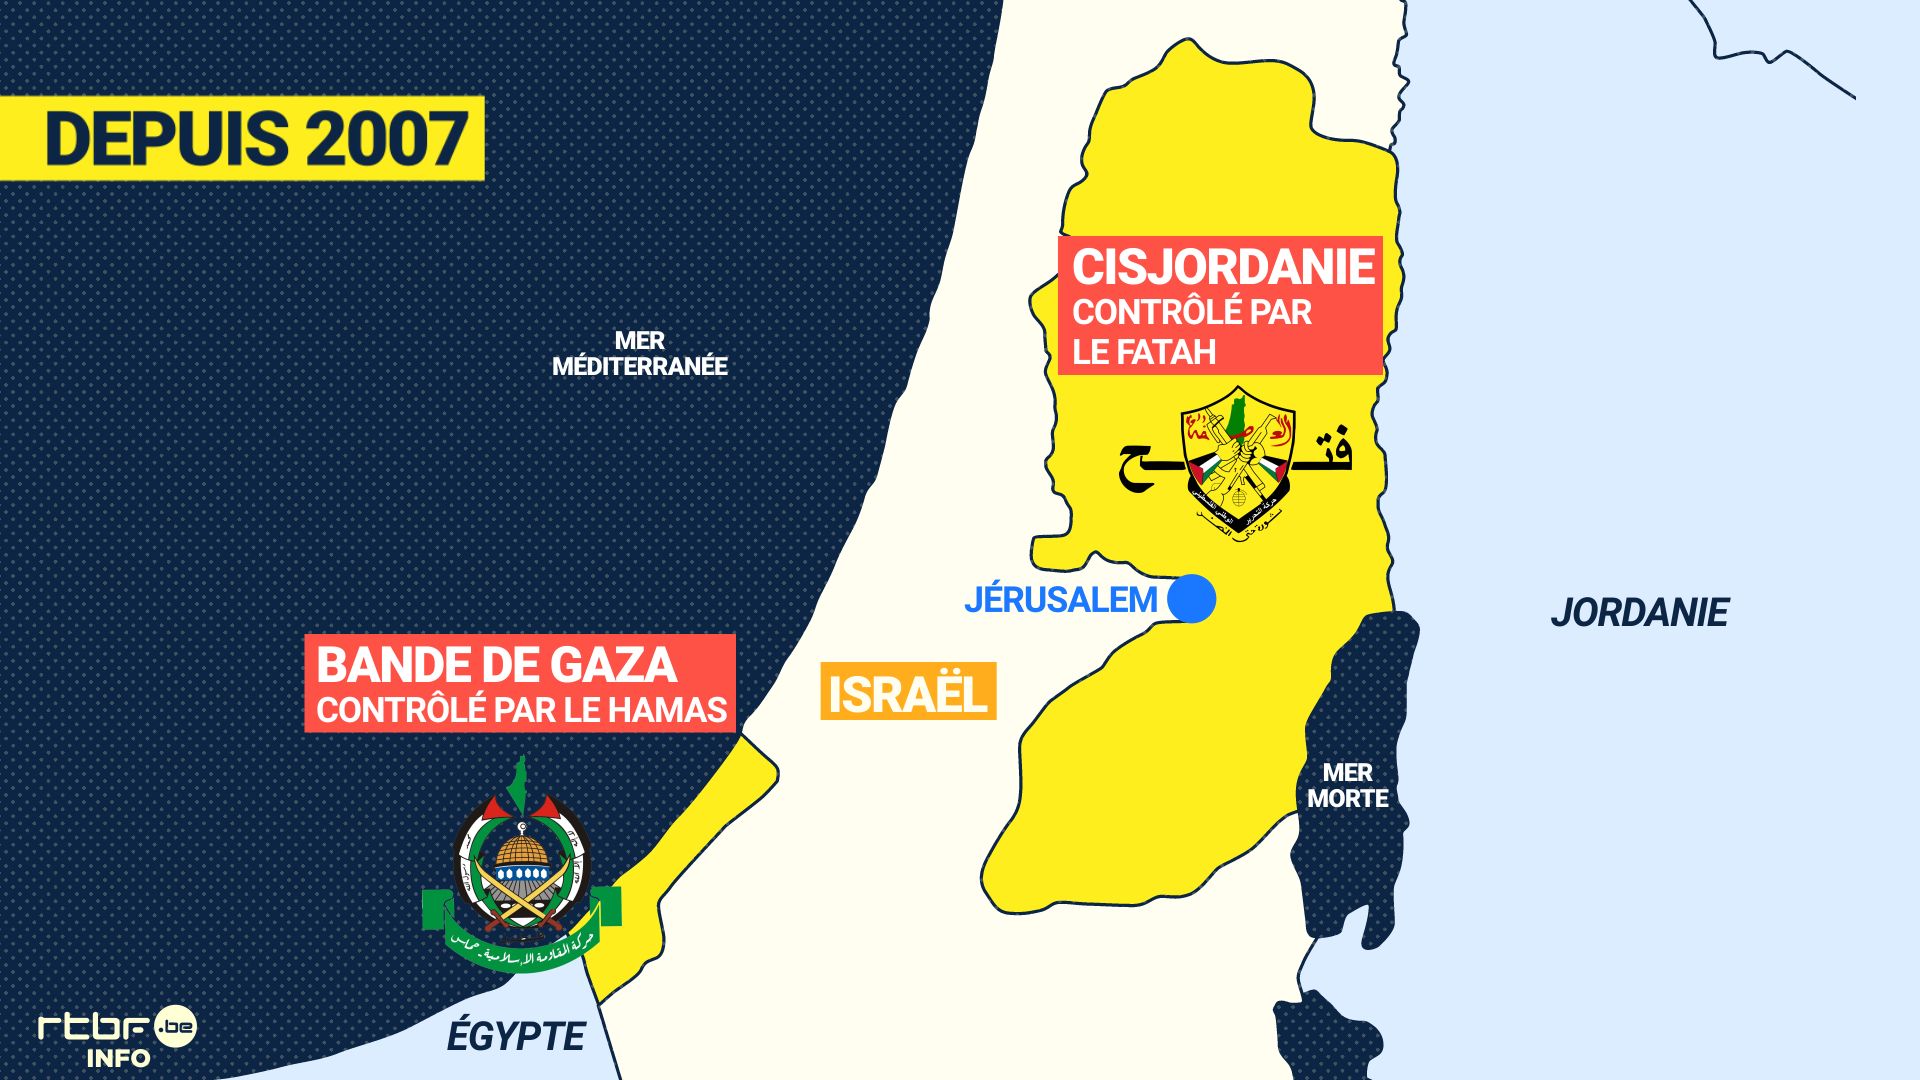 Le Hamas et le Fatah se partagent le contrôle de Gaza et de la Cisjordanie. 